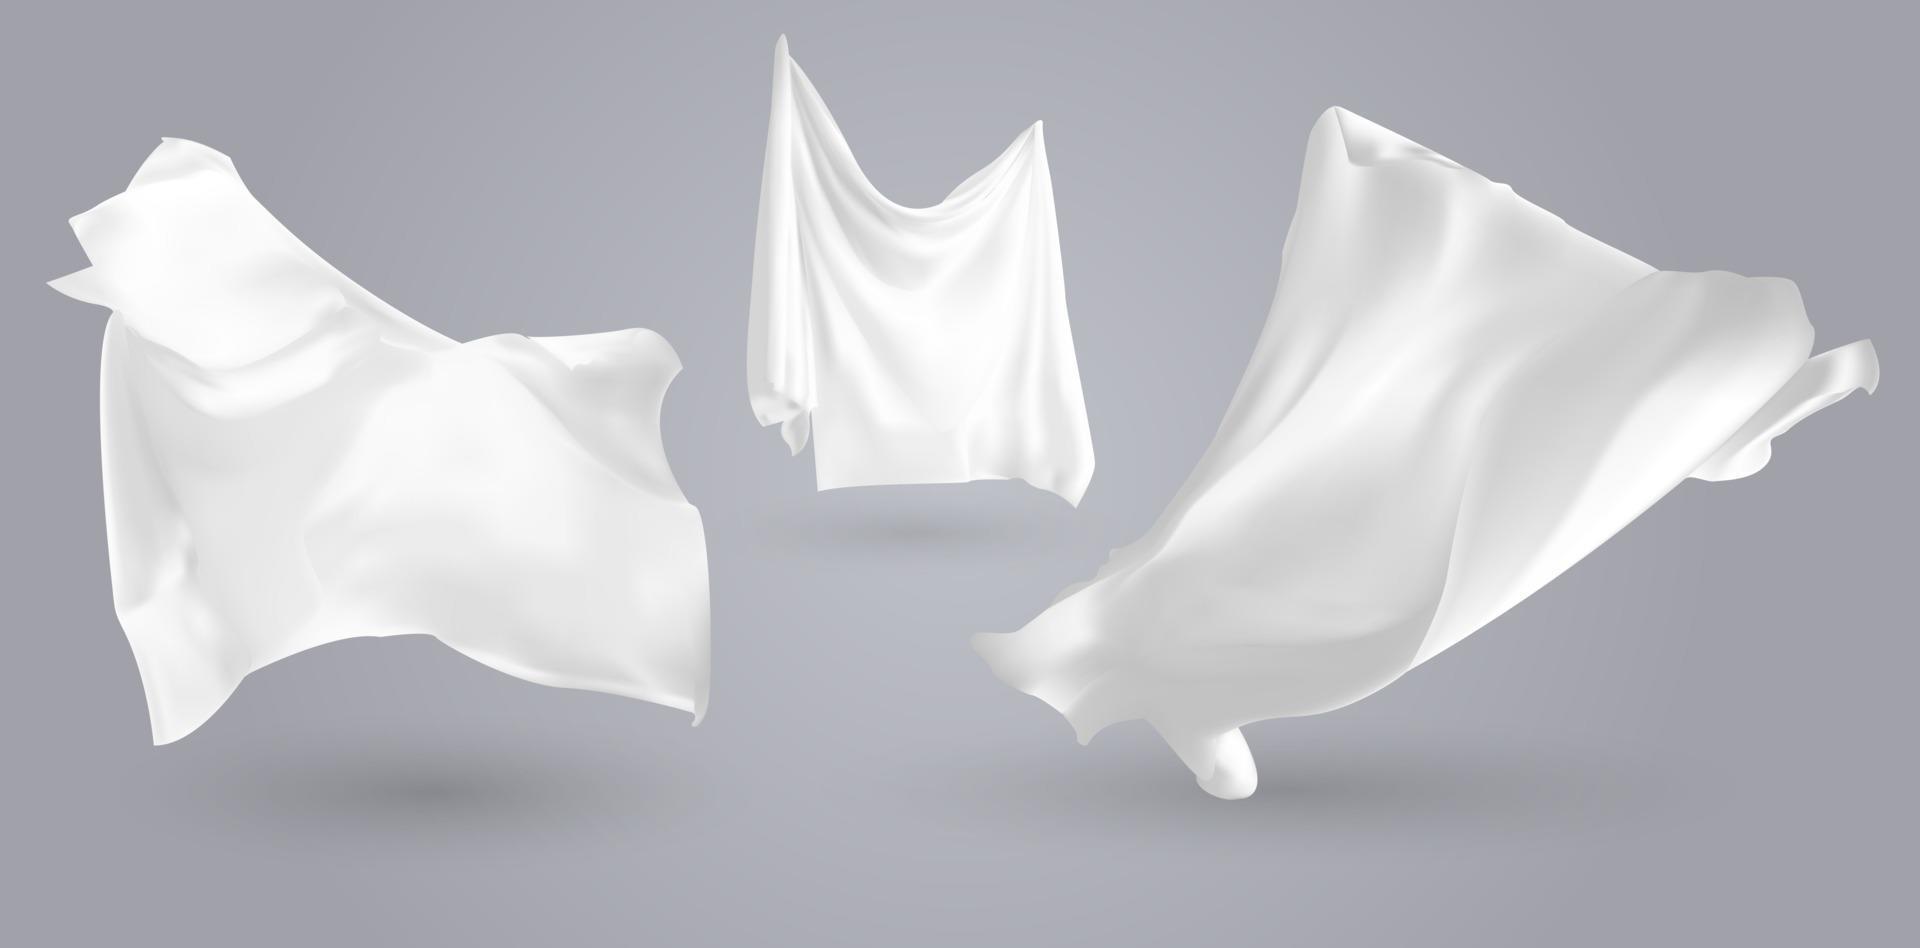 conjunto de telas blancas que revolotean realistas, material claro y ligero suave aislado en la ilustración de vector de fondo gris